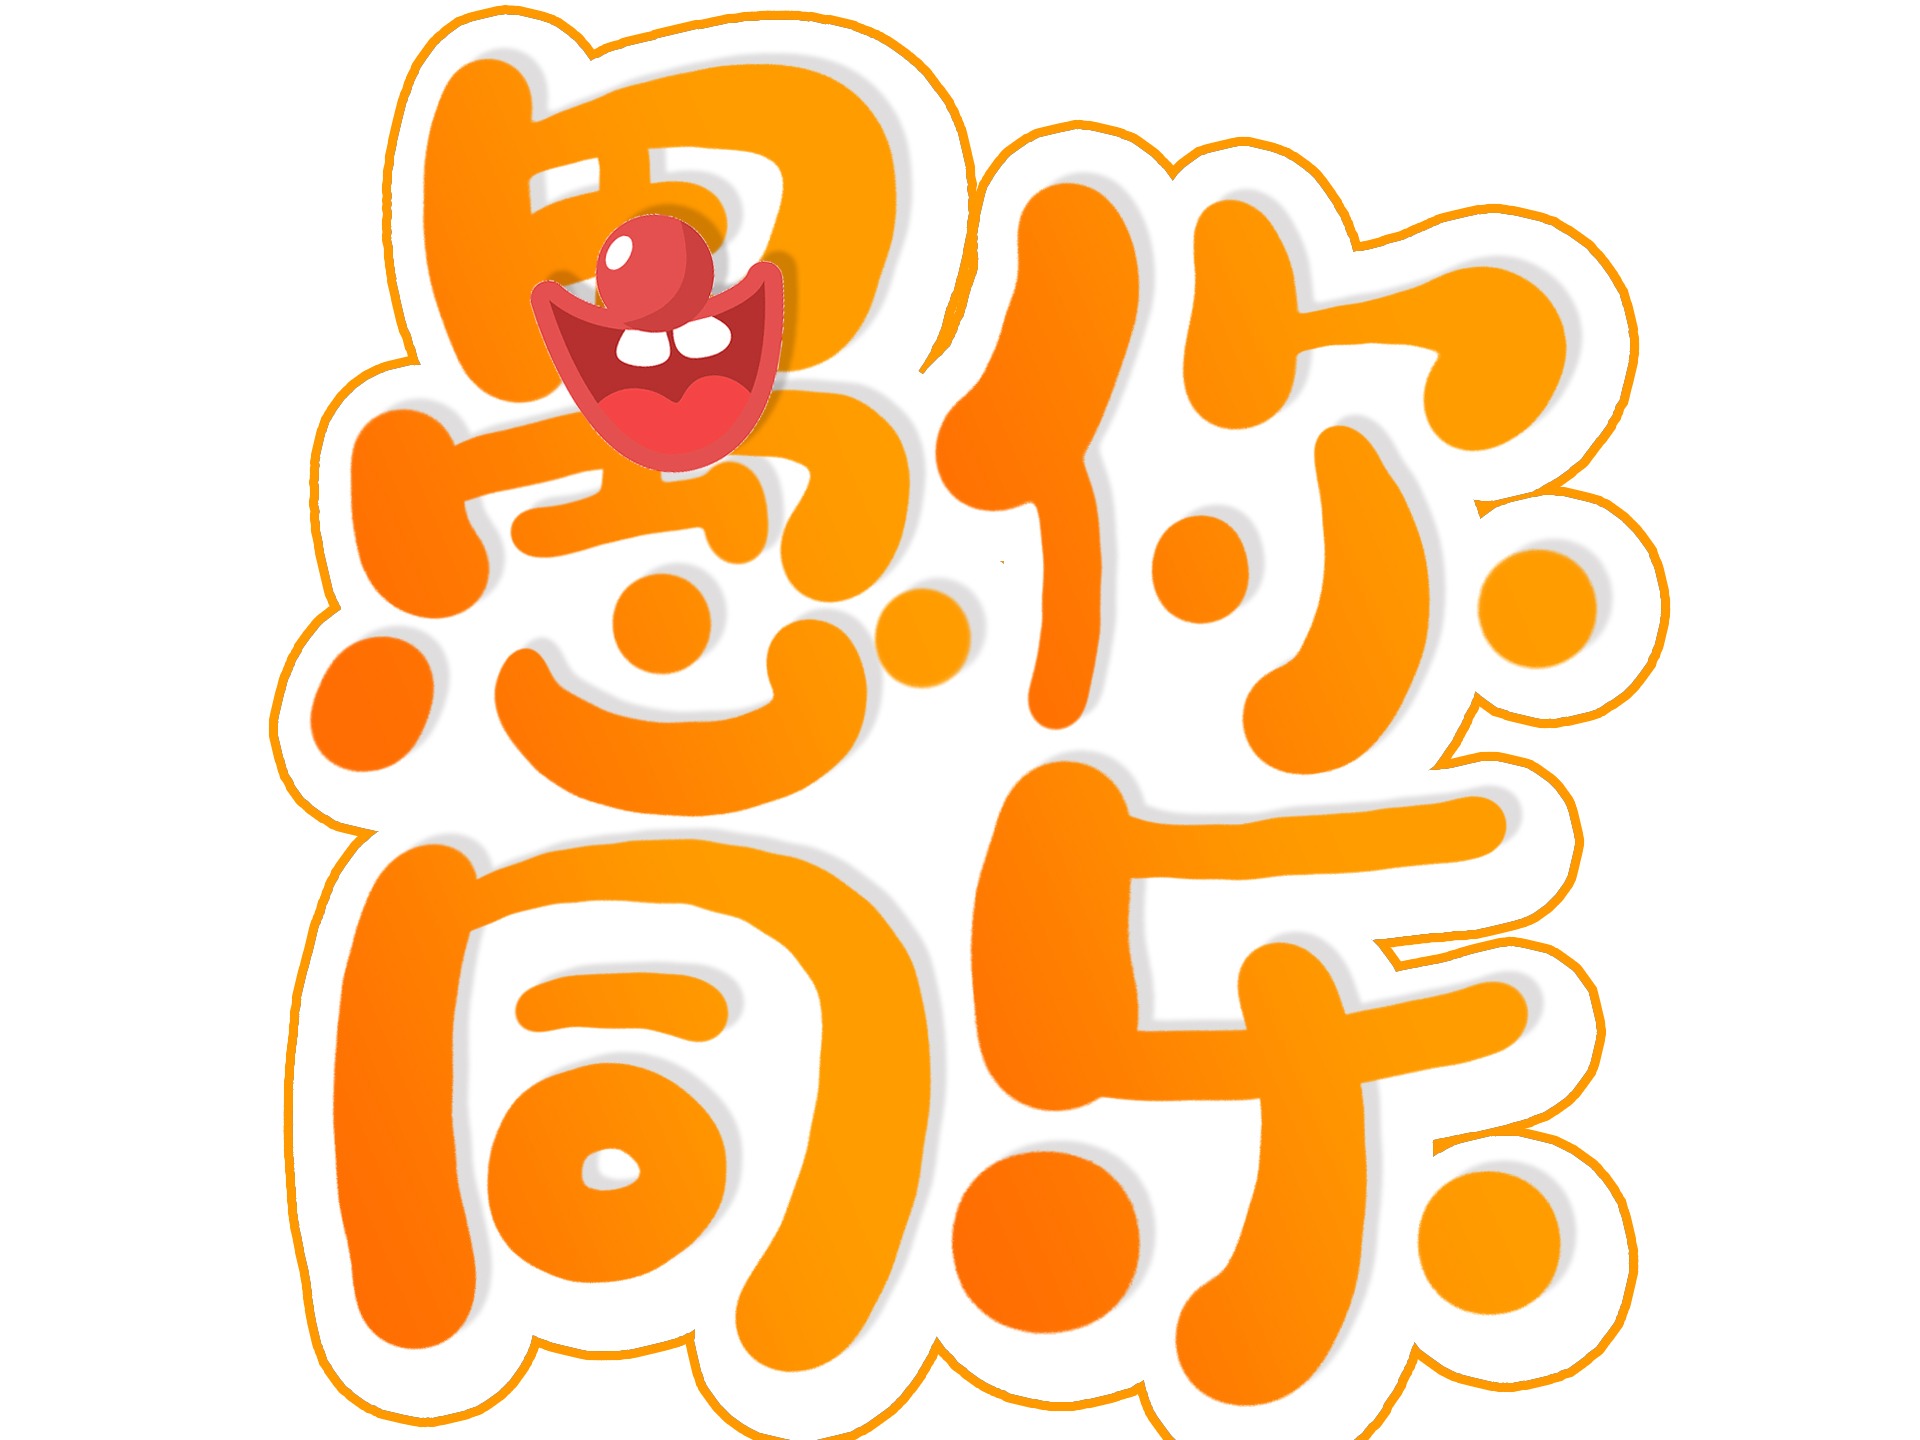 橙褐色愚人节由来卡通愚人节节日分享中文微信朋友圈 - 模板 - Canva可画